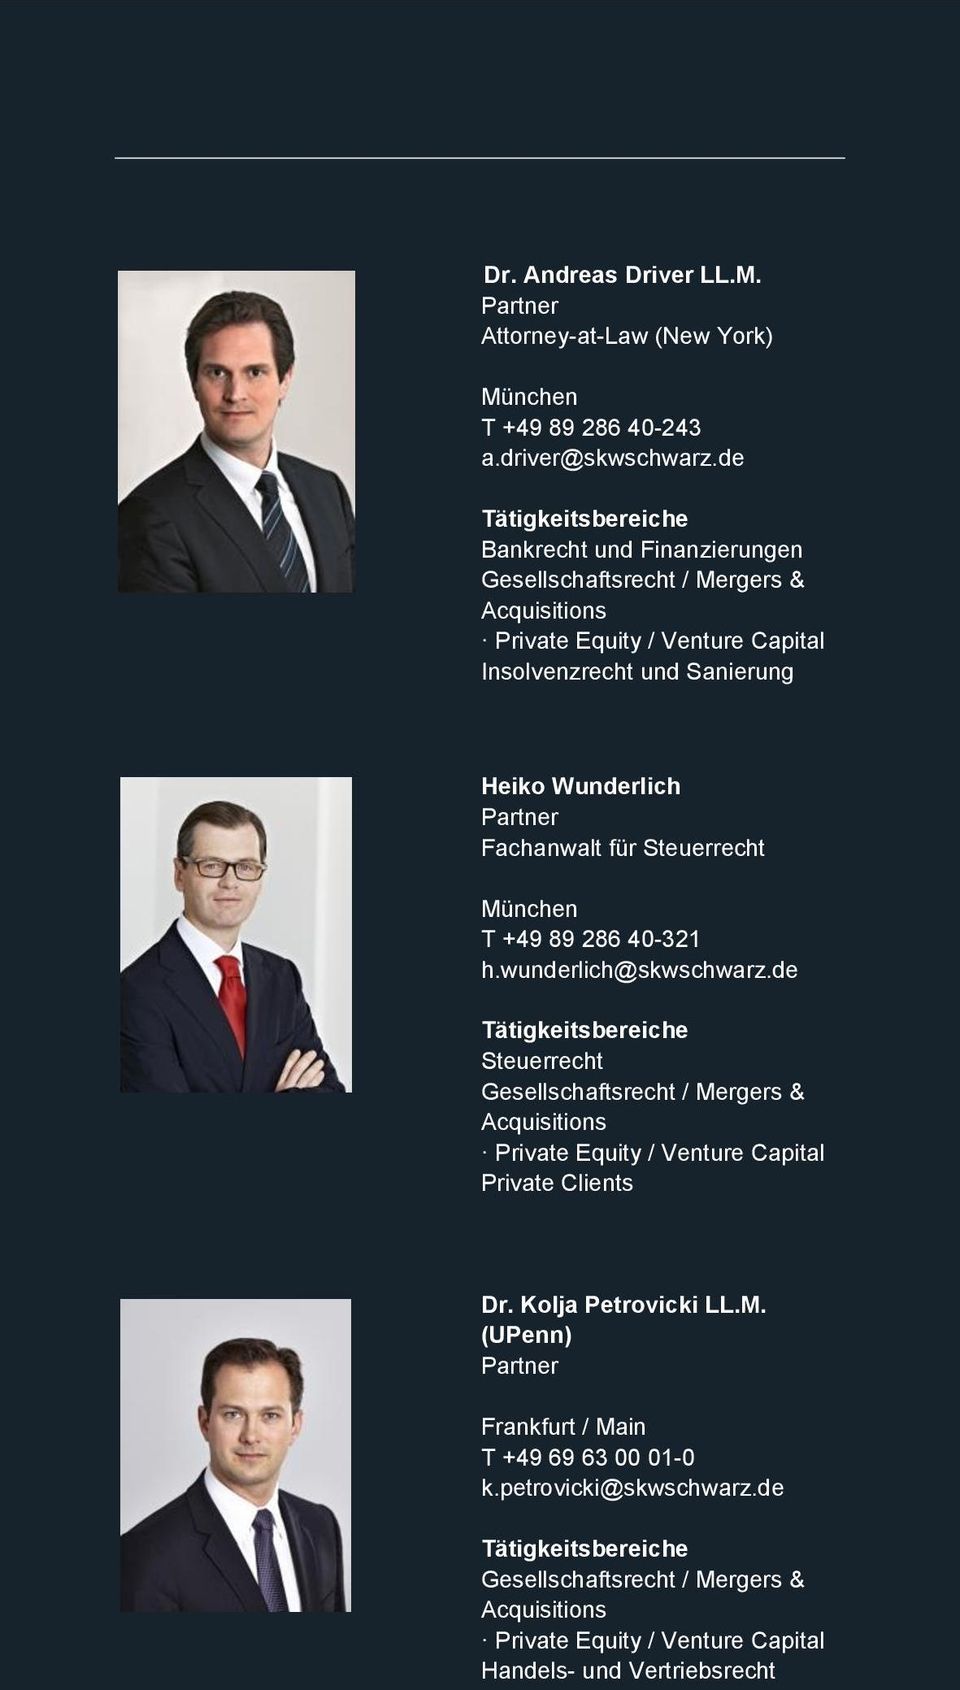 Fachanwalt für Steuerrecht München T +49 89 286 40-321 h.wunderlich@skwschwarz.